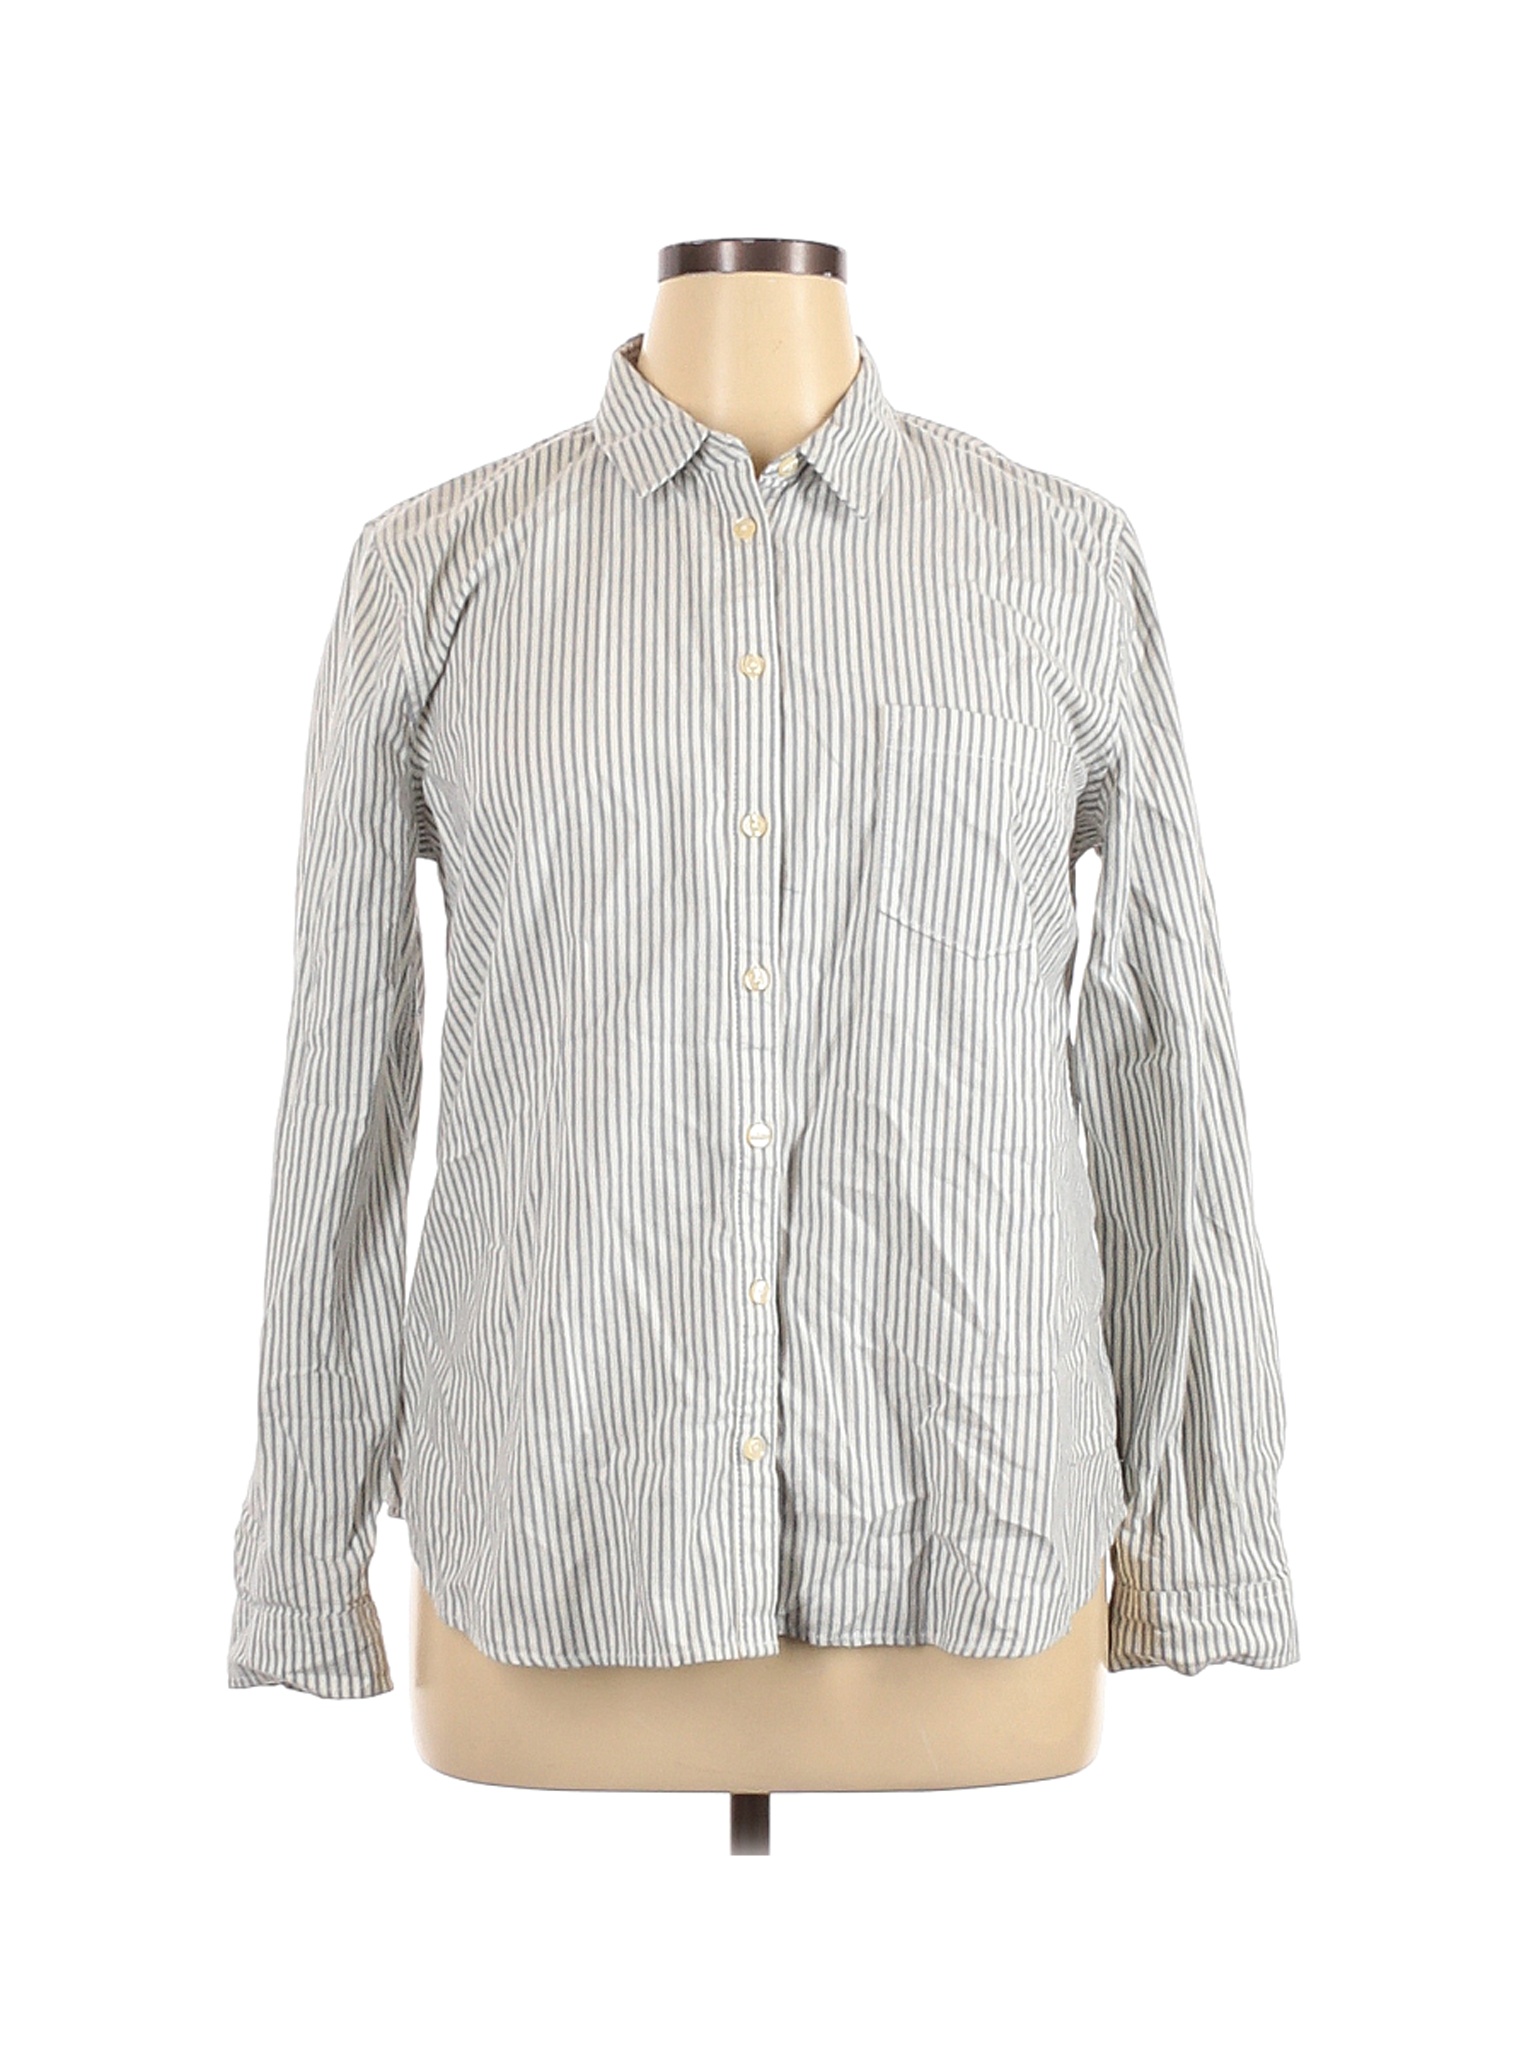 G.H. Bass & Co. Women Blue Long Sleeve Button-Down Shirt XL | eBay